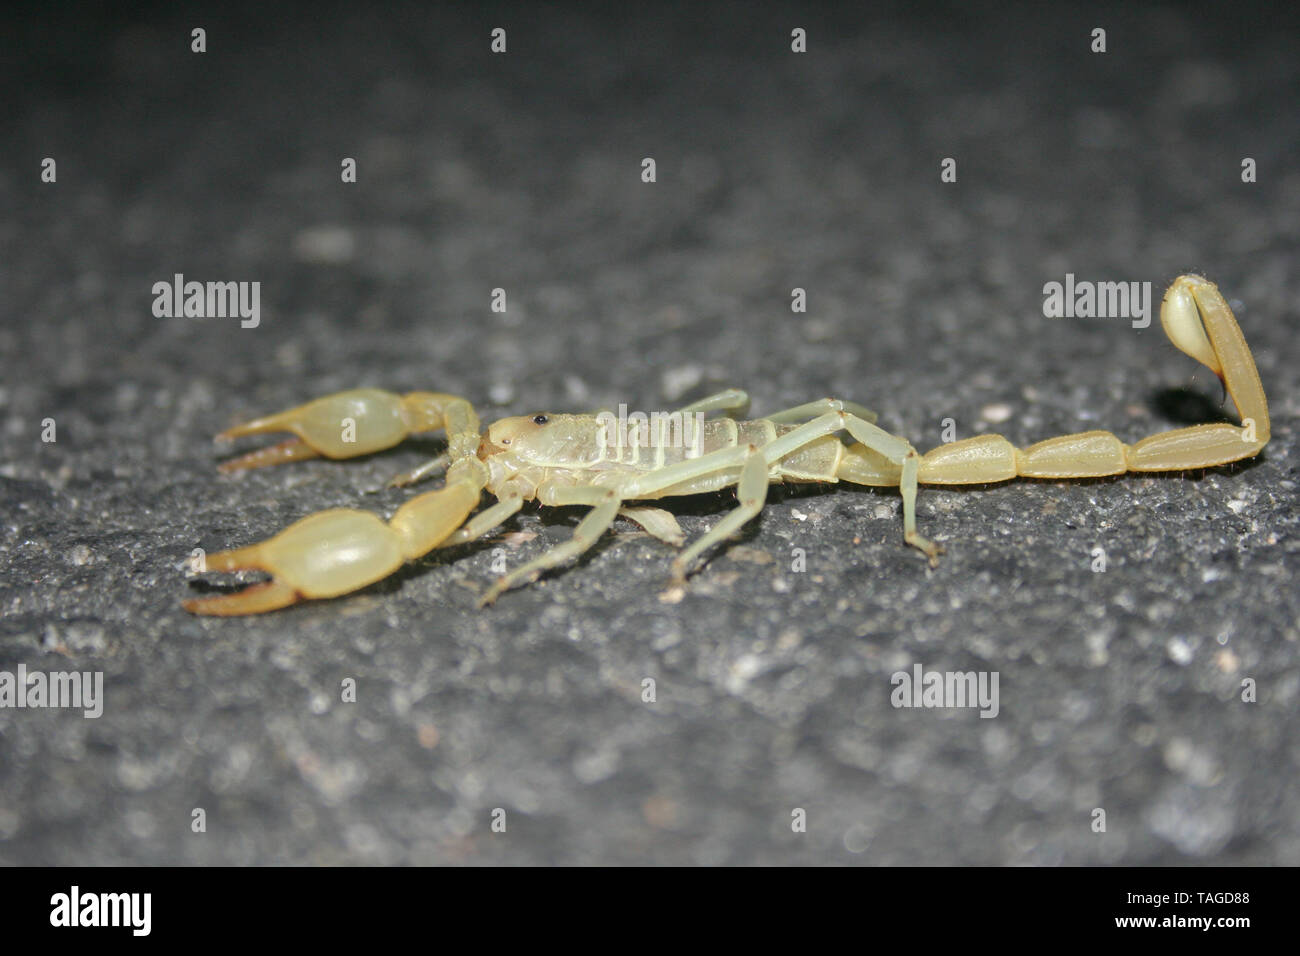 Giant Desert Hairy Scorpion (Hadrurus arizonensis) Stock Photo